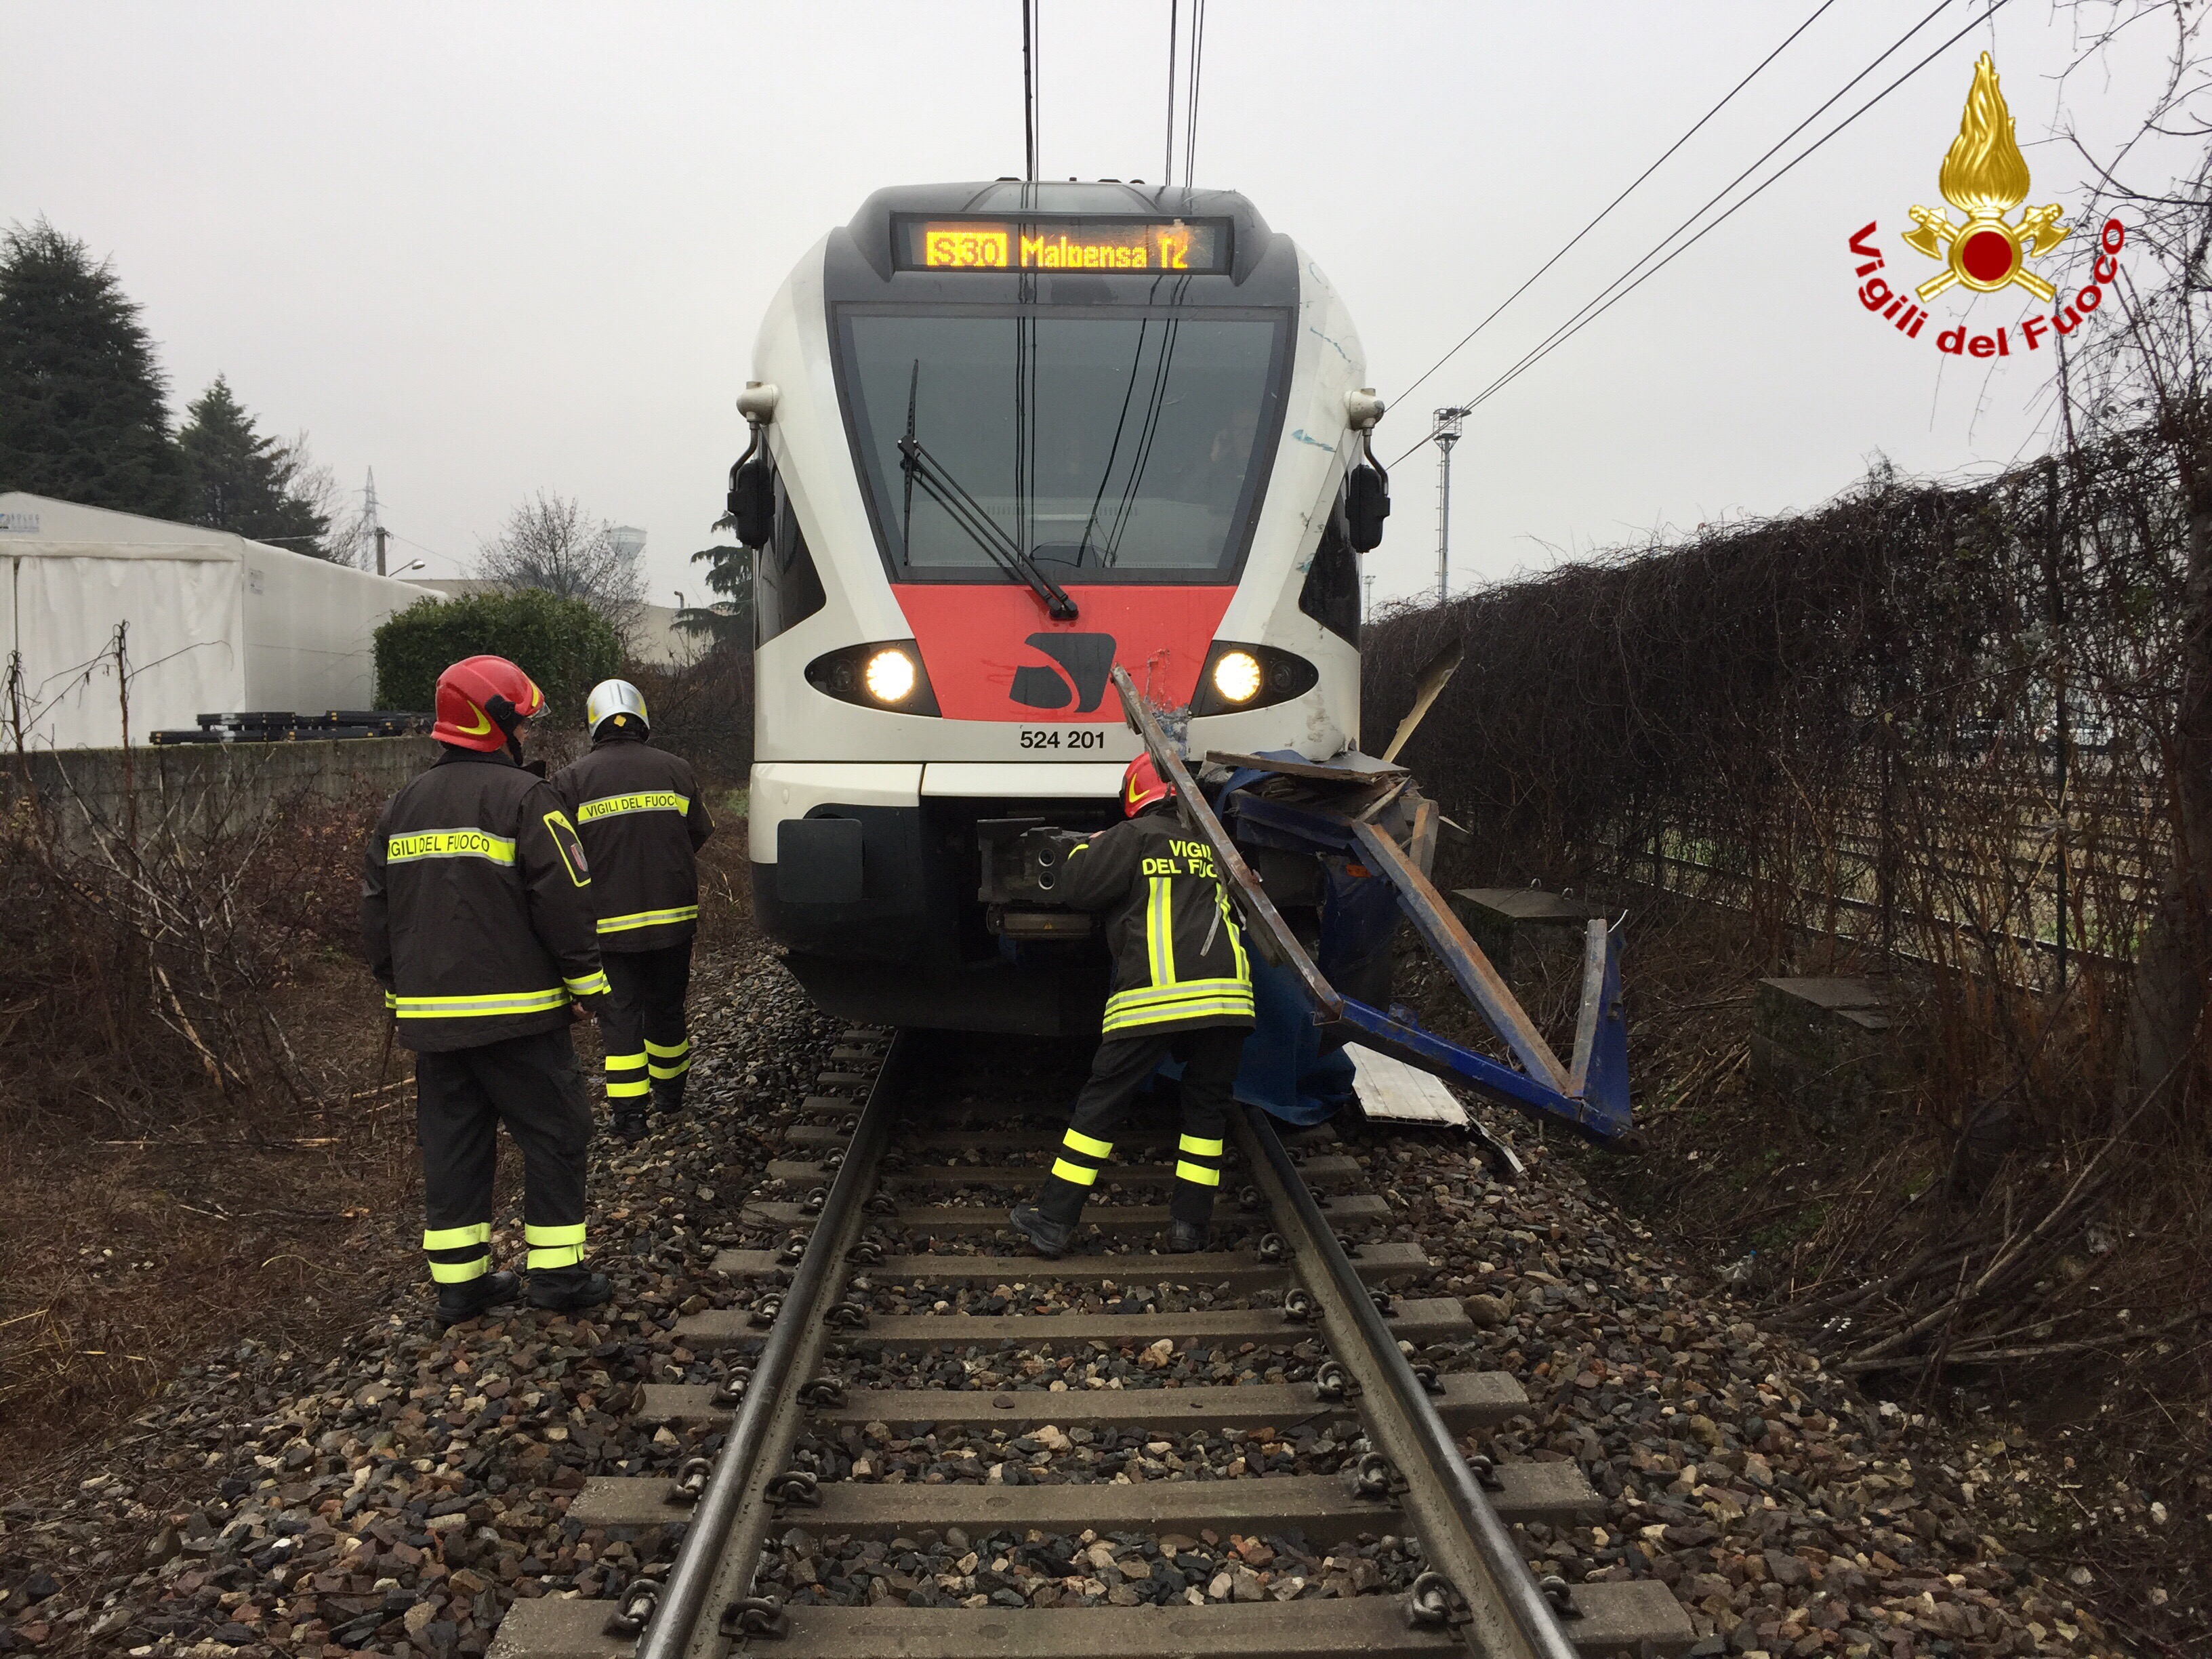 Camion colpito da un treno sulla linea ferroviaria Luino-Gallarate, disagi sulla circolazione